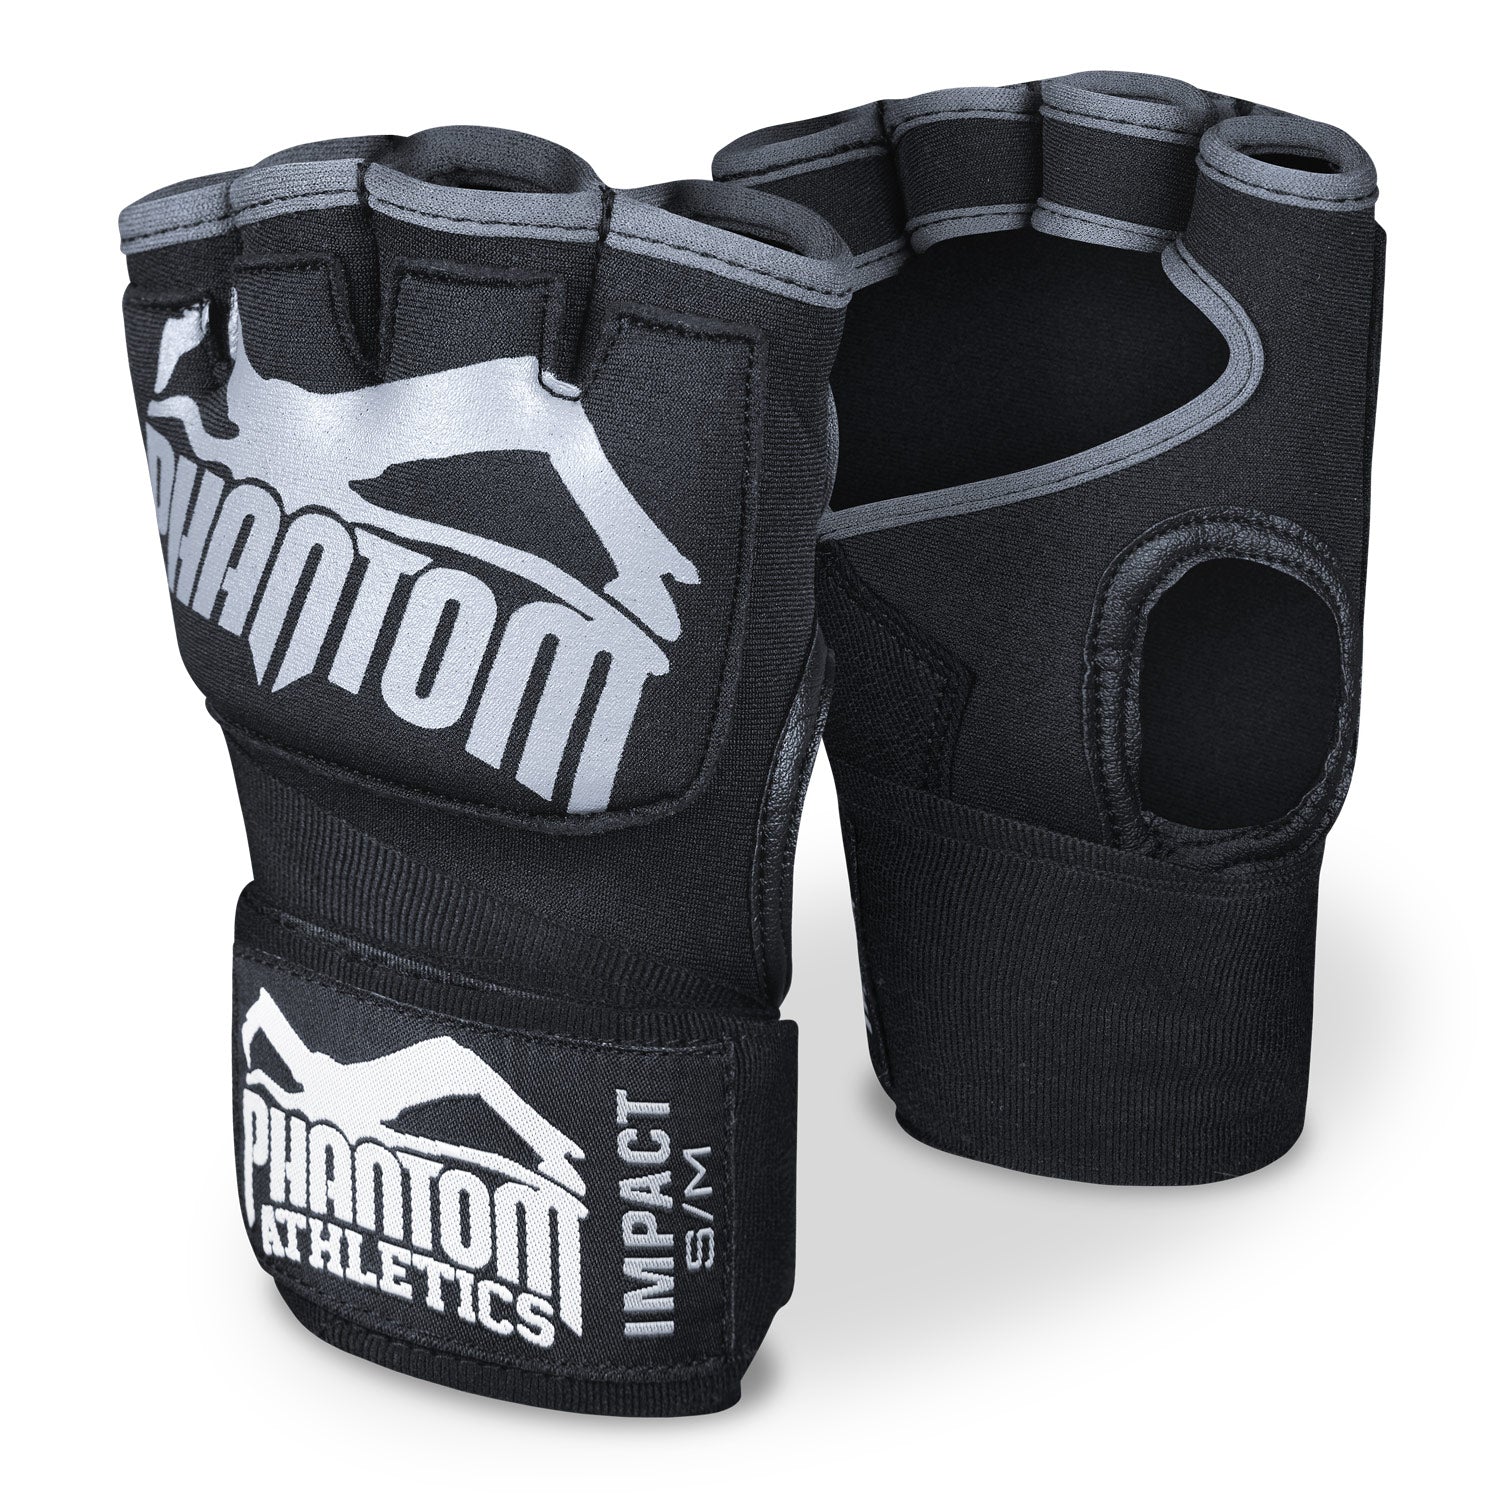 Die Phantom Boxbandagen Impact mit Gel Füllung. Für mehr Schutz in deinem Kampfsporttraining.